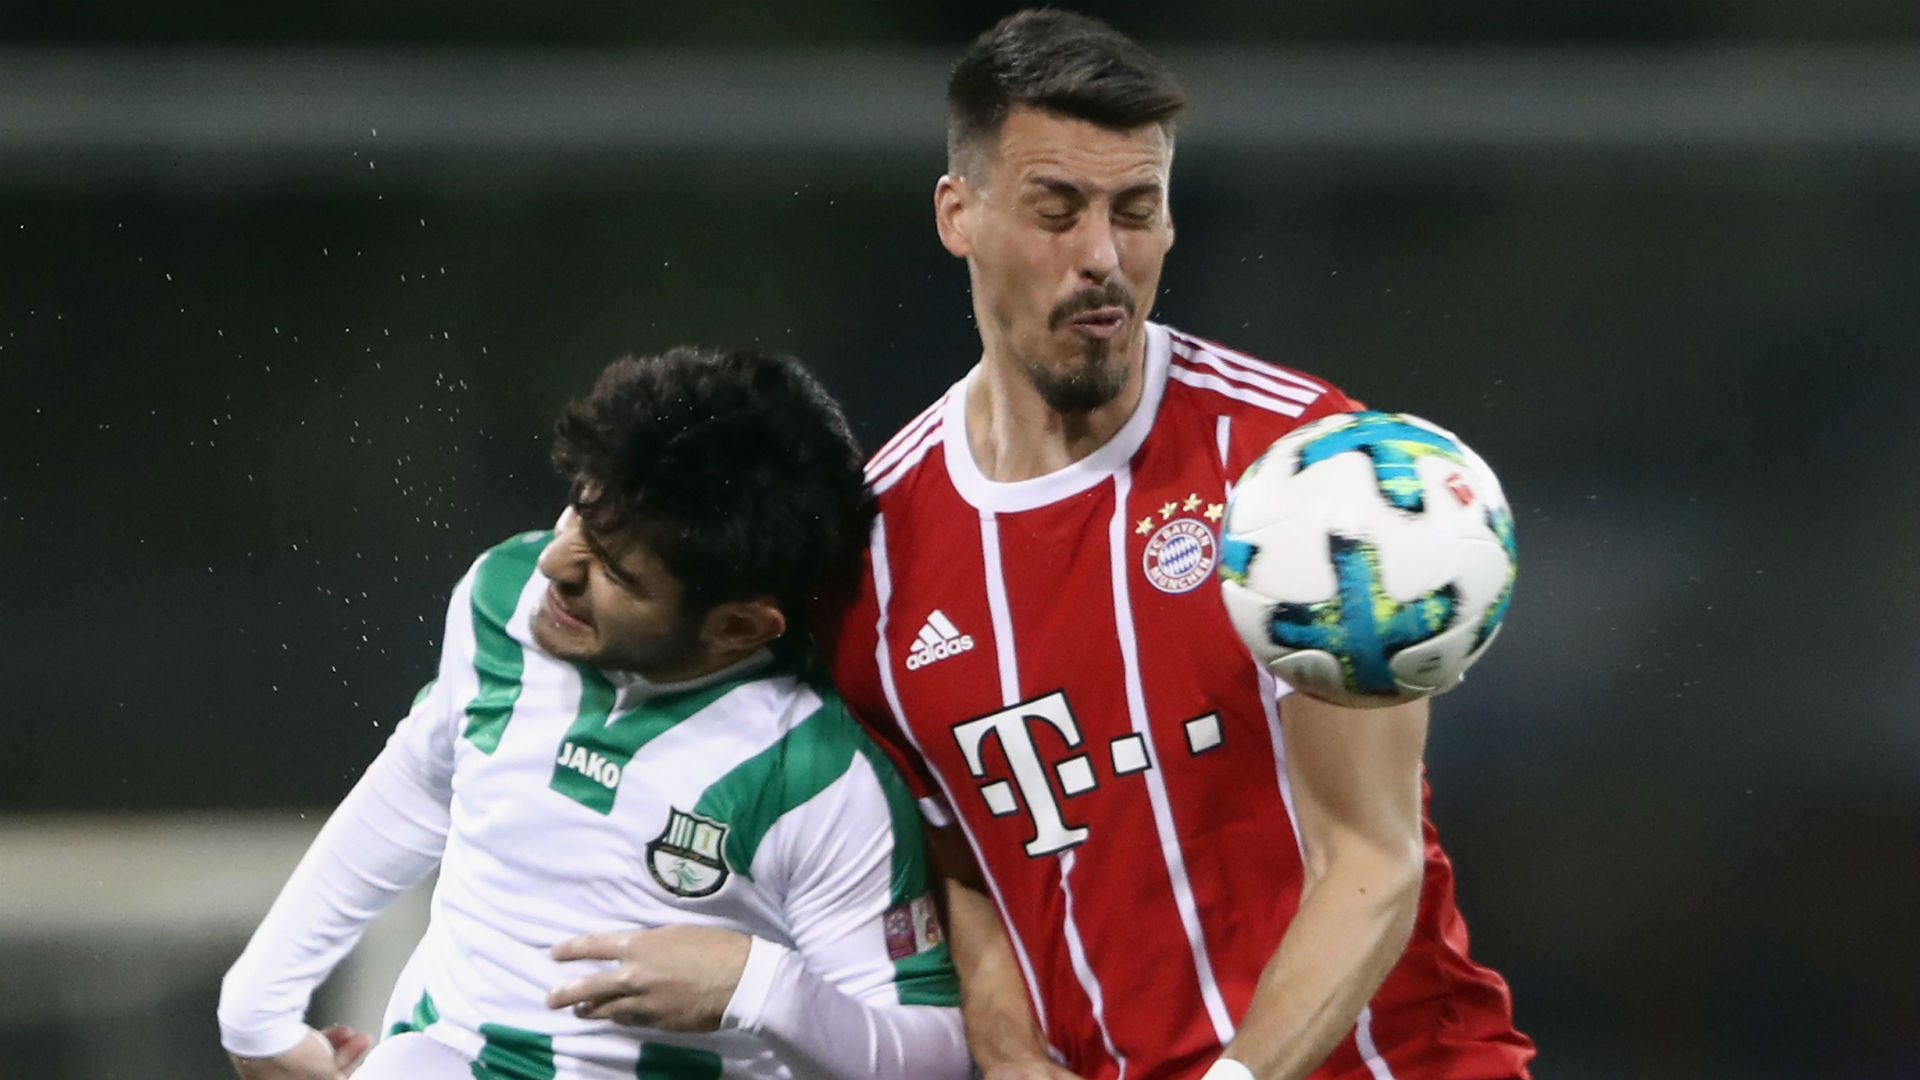 Wagner on target as Bayern thrash Al Ahli